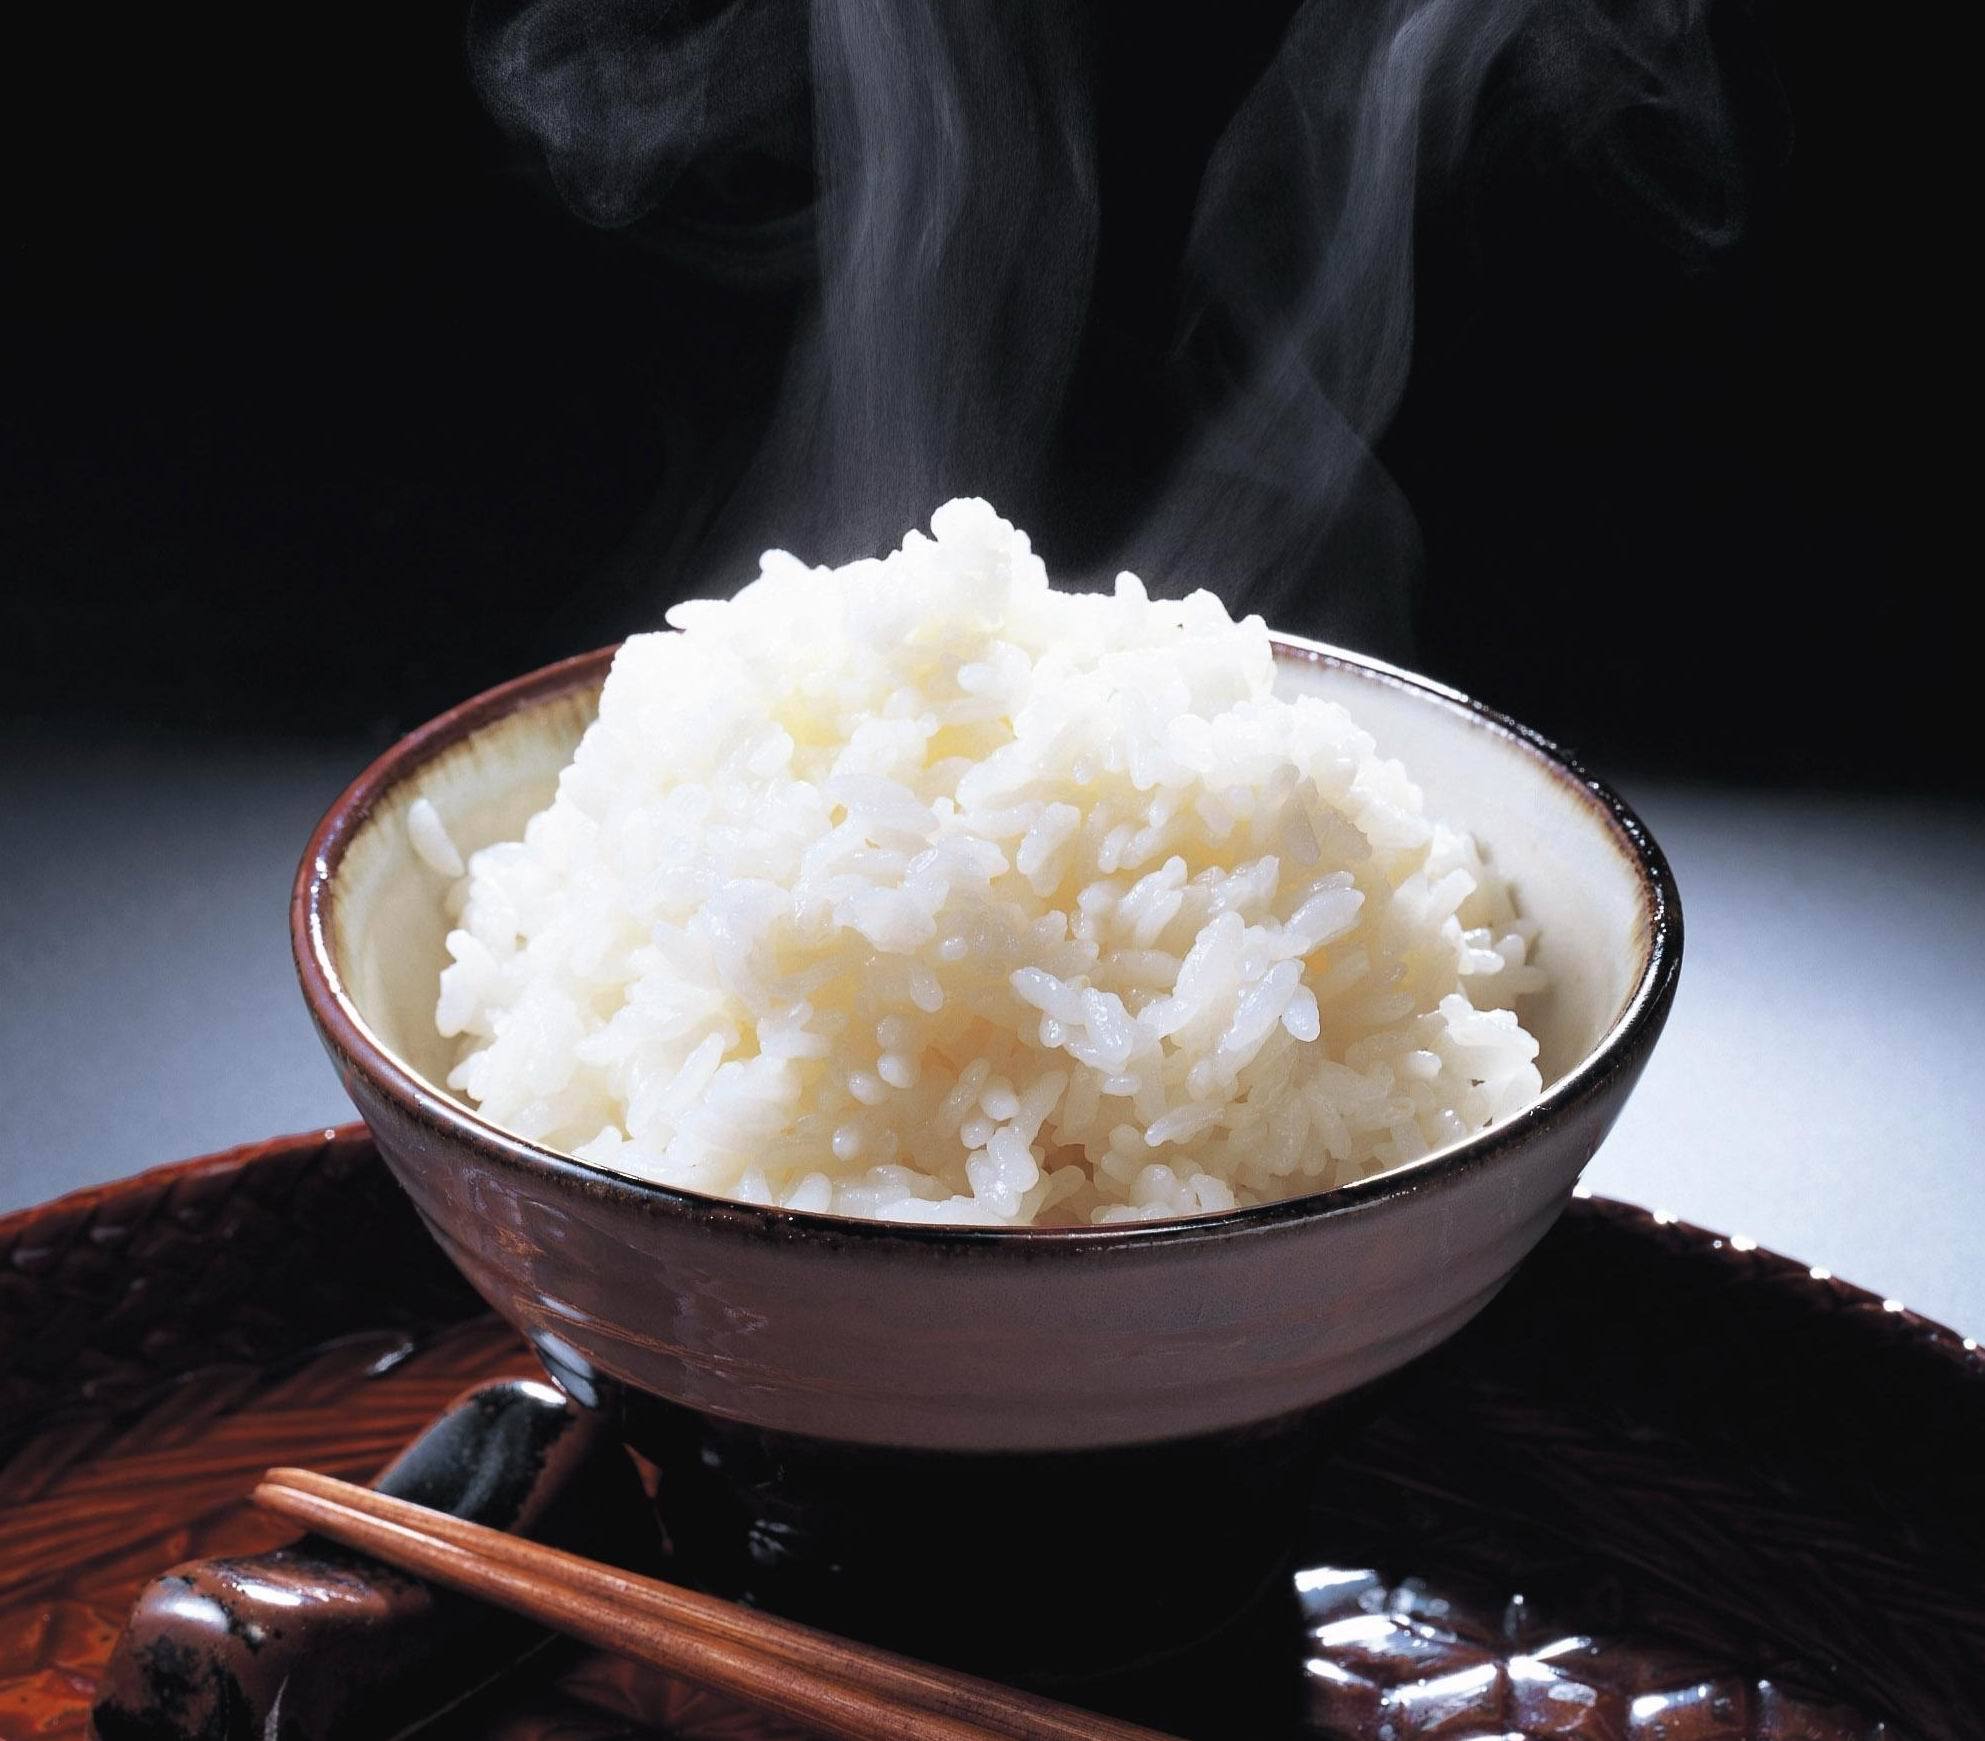 一碗晶莹剔透的米饭,这个小妙招轻松搞定!